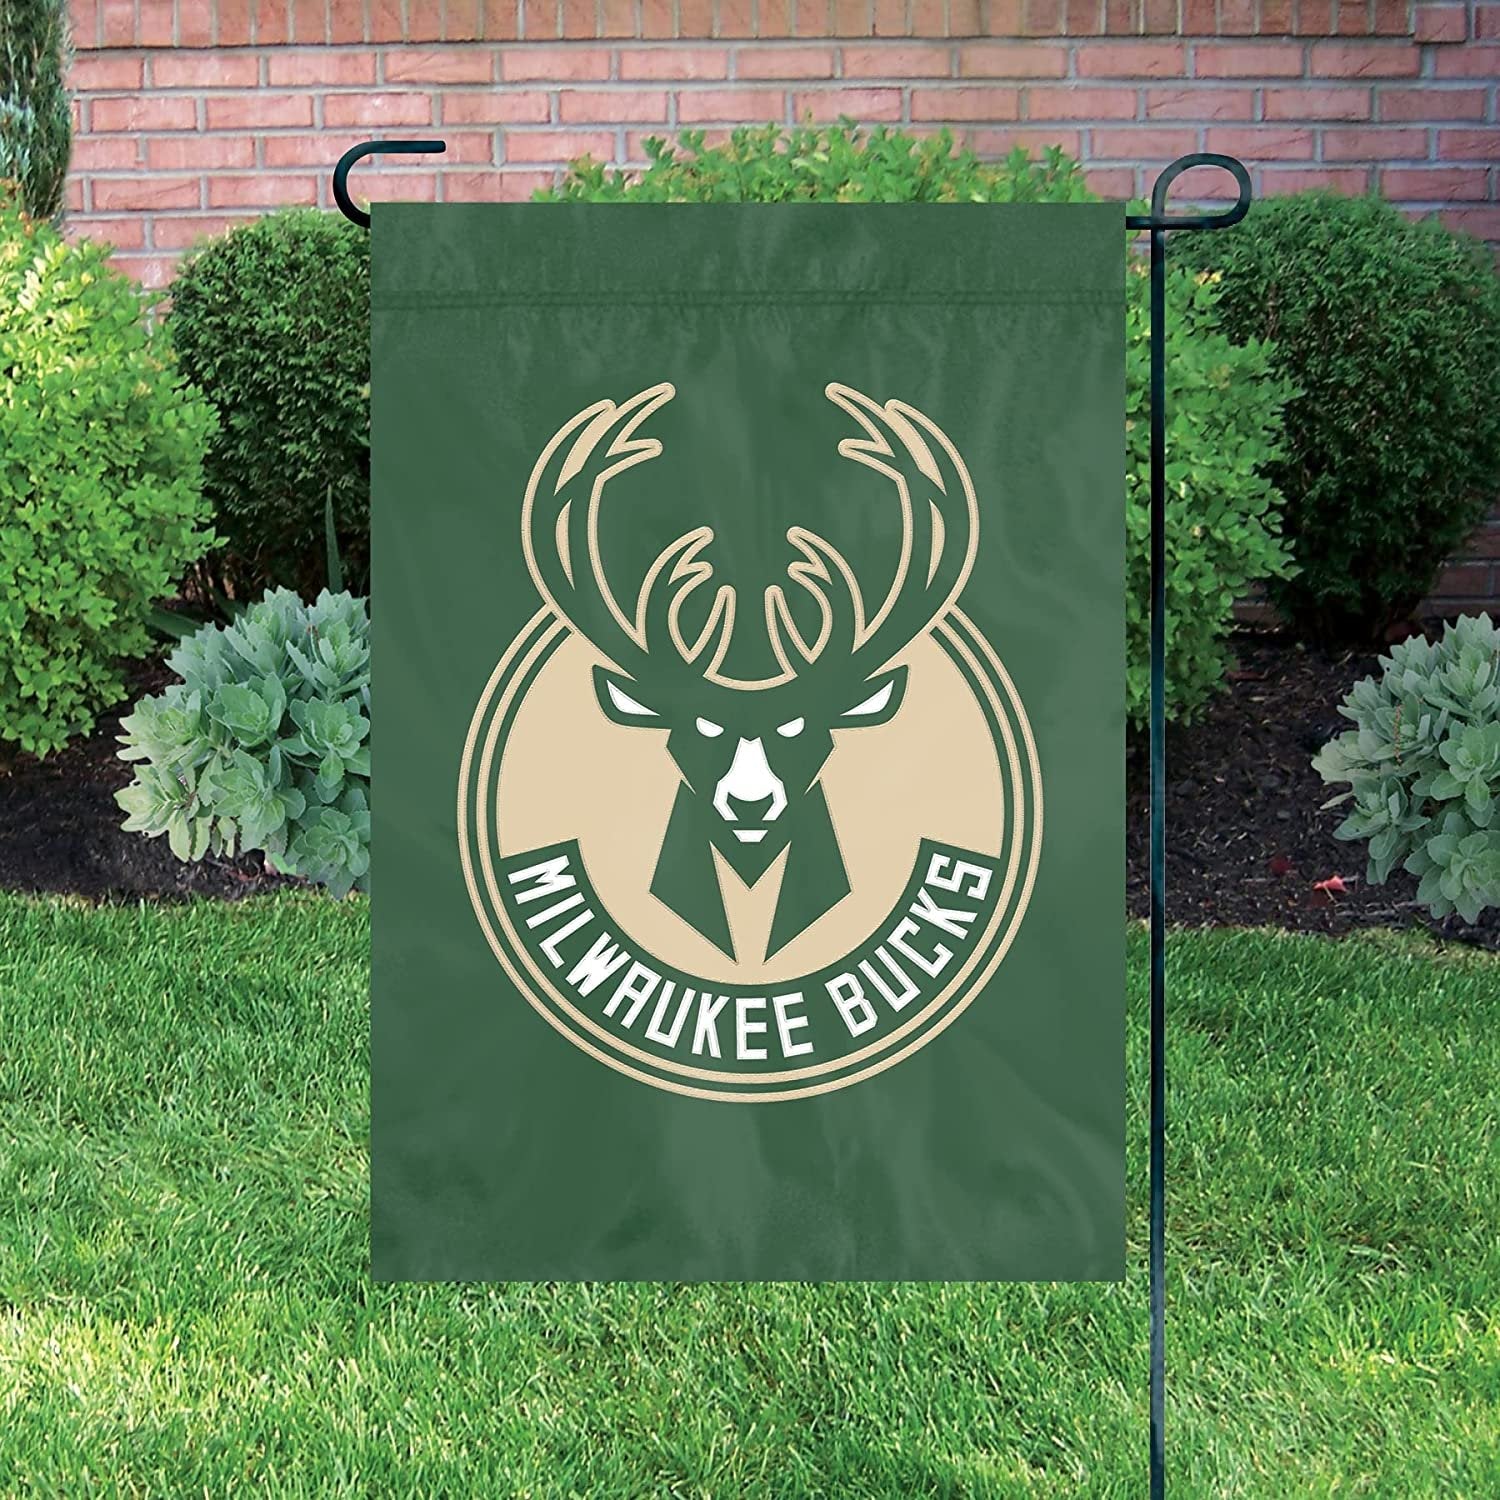 Milwaukee Bucks Premium Garden Flag Banner Applique Embroidered 12.5x18 Inch